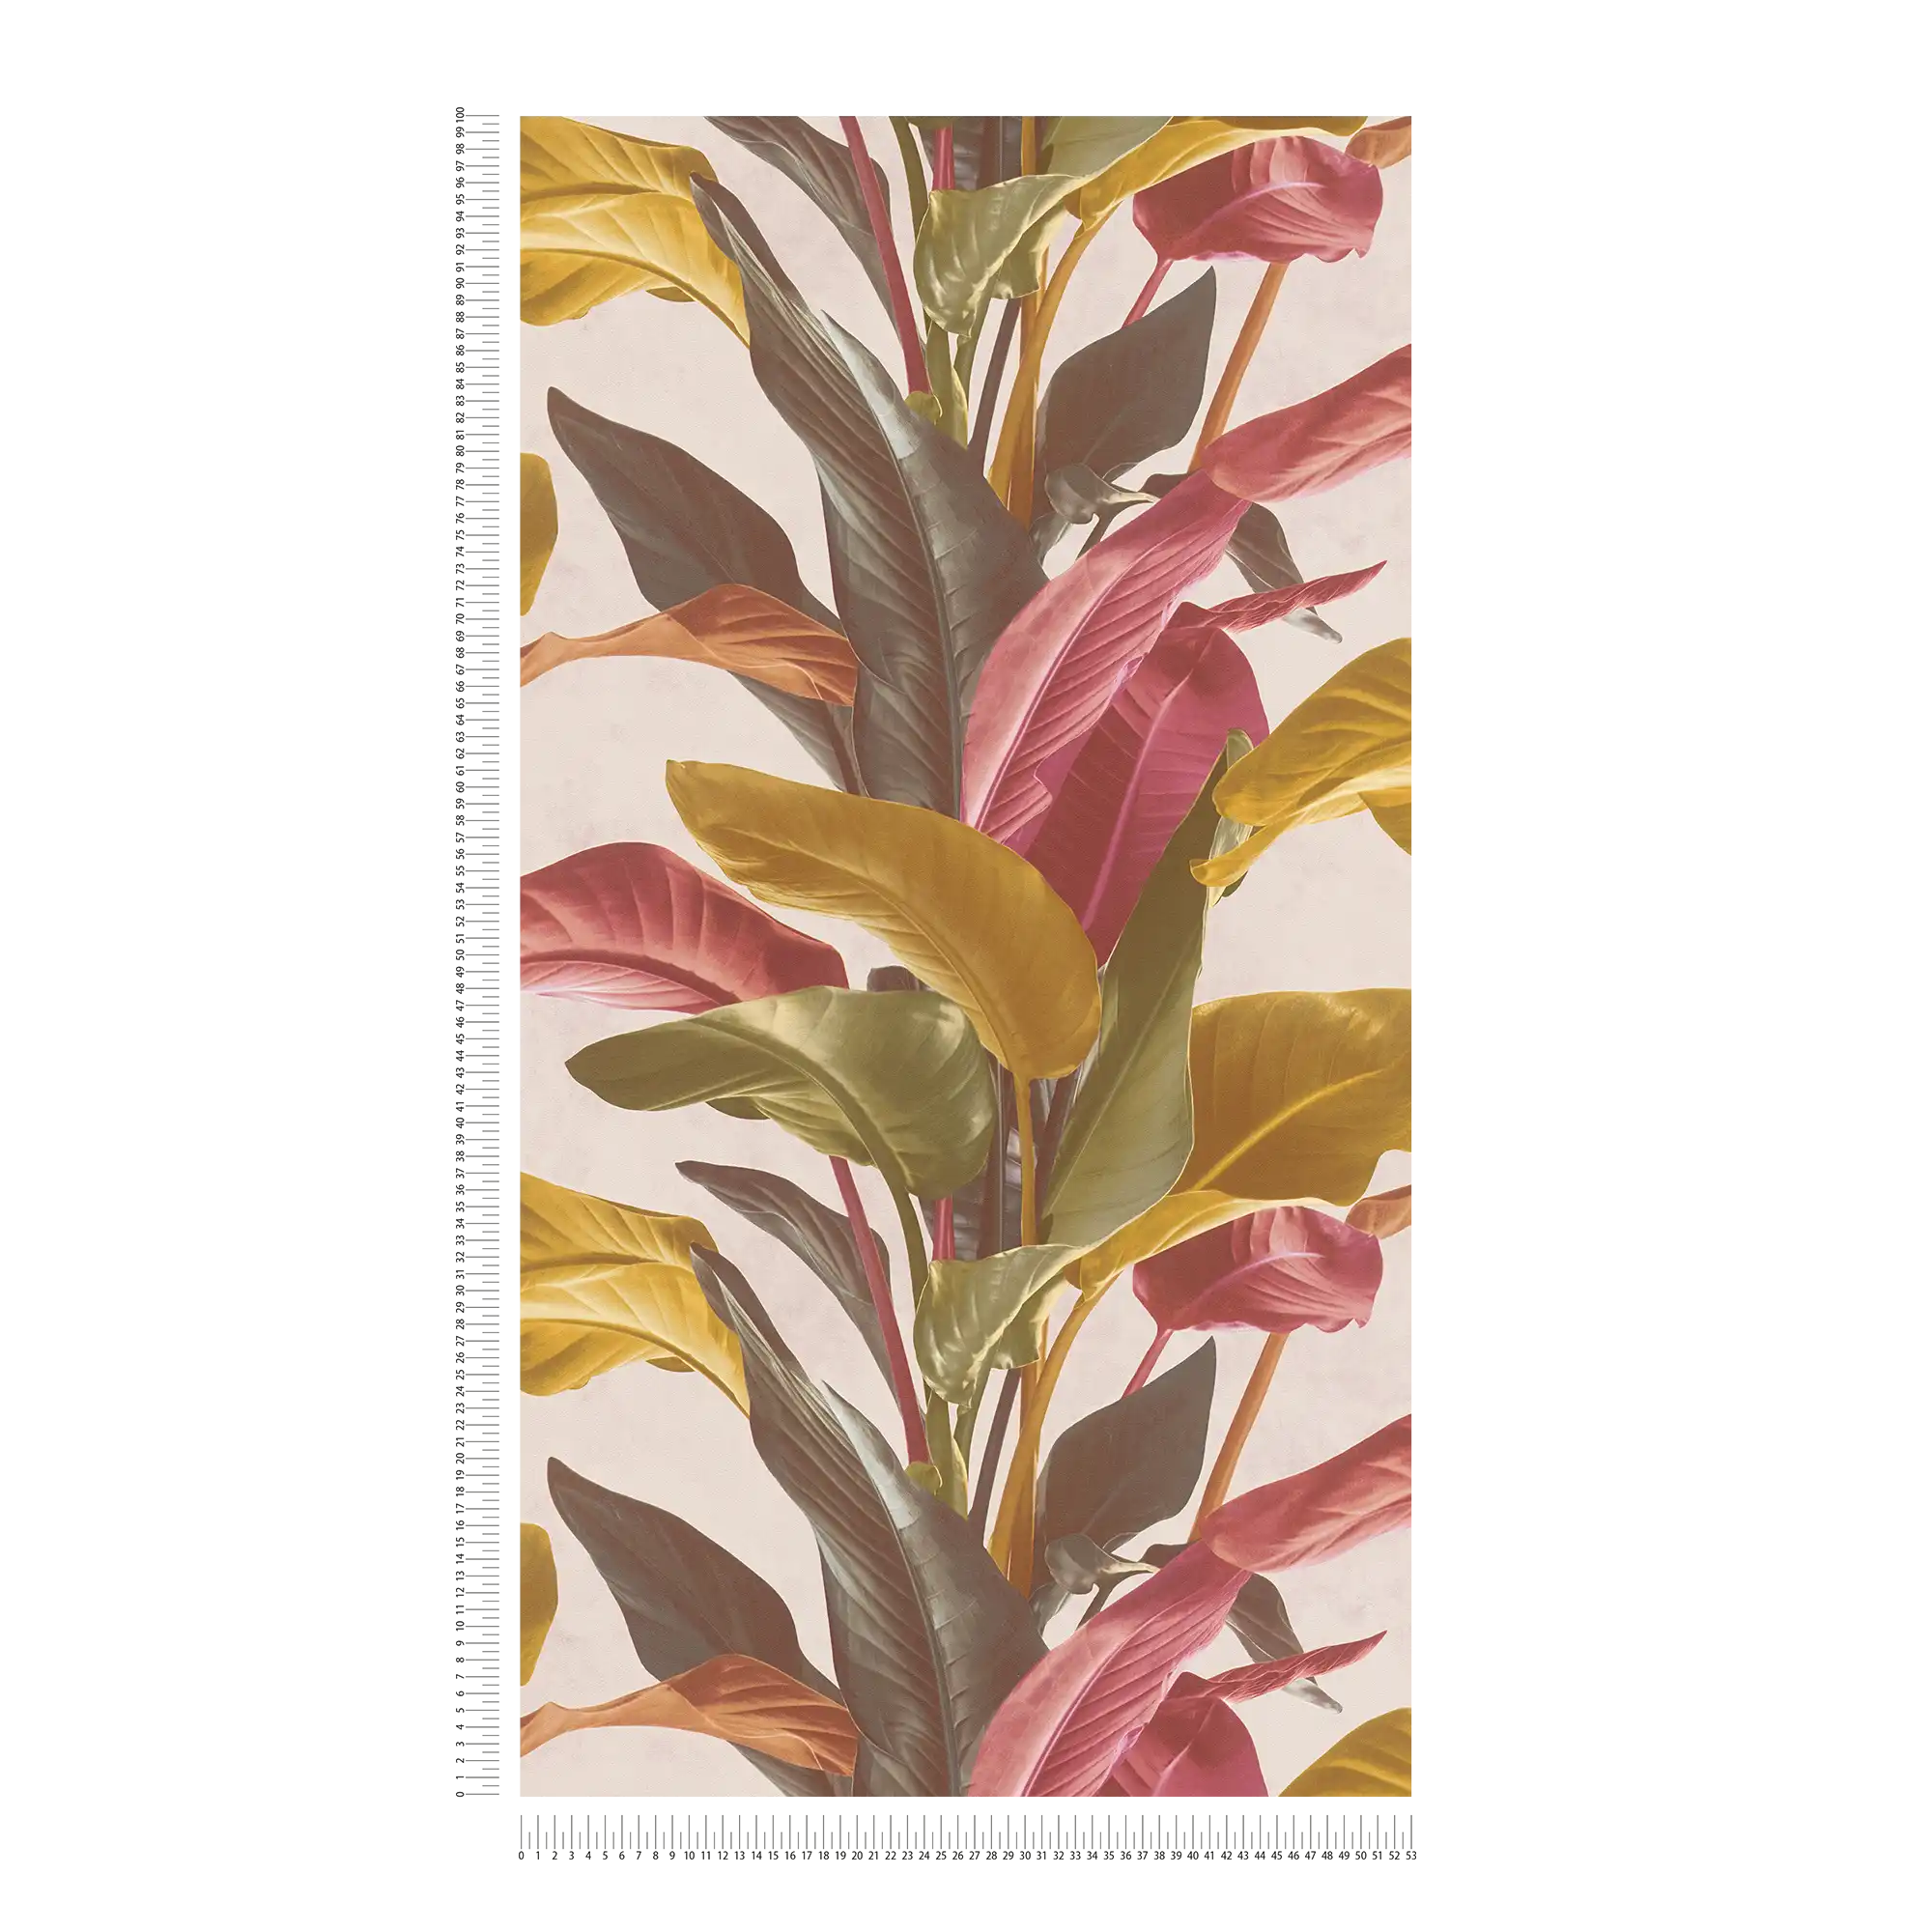             Papel pintado de hojas de colores con brillo mate de seda - marrón, naranja, rojo
        